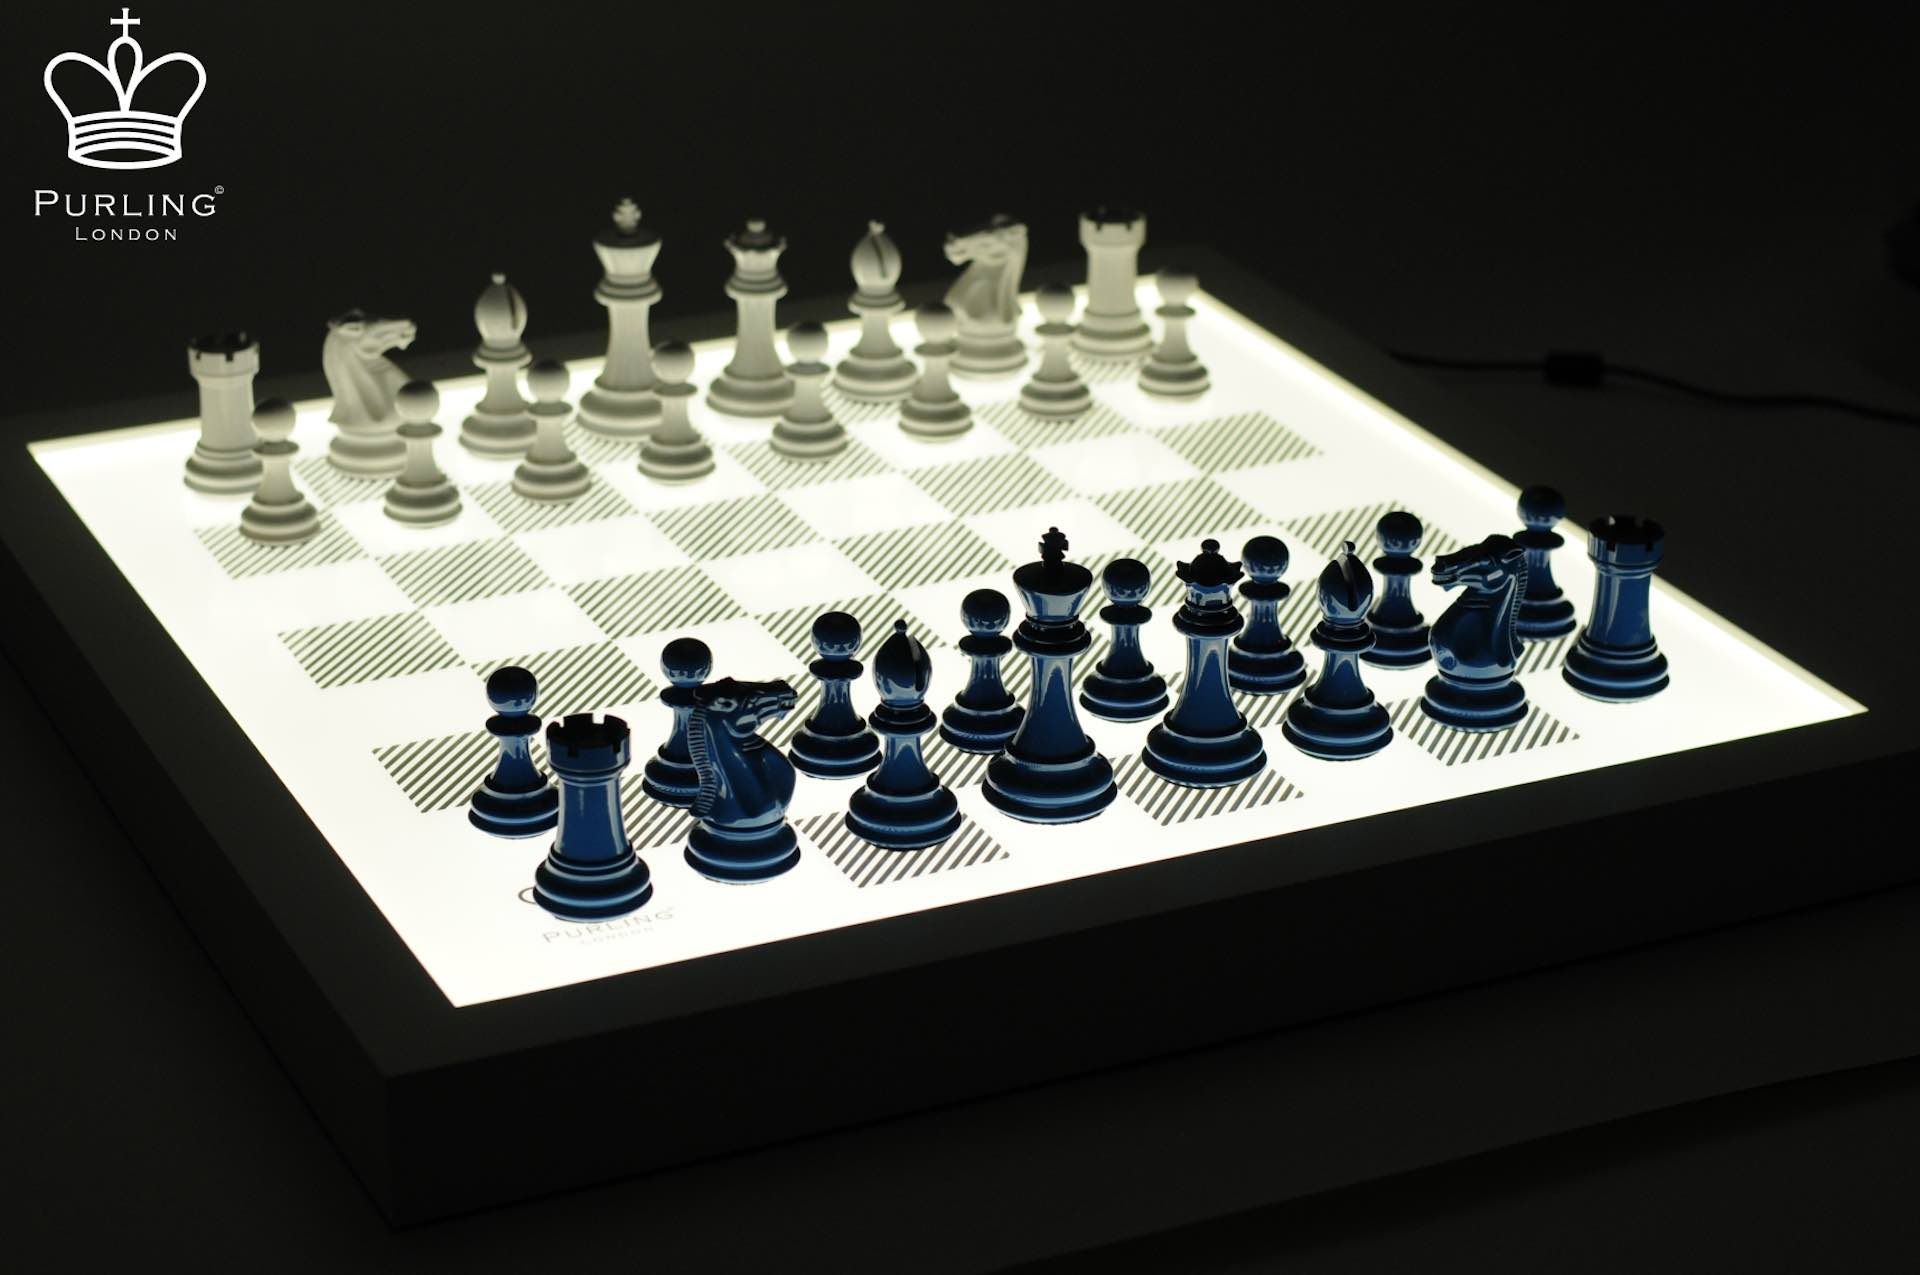 Illuminated Chessboard